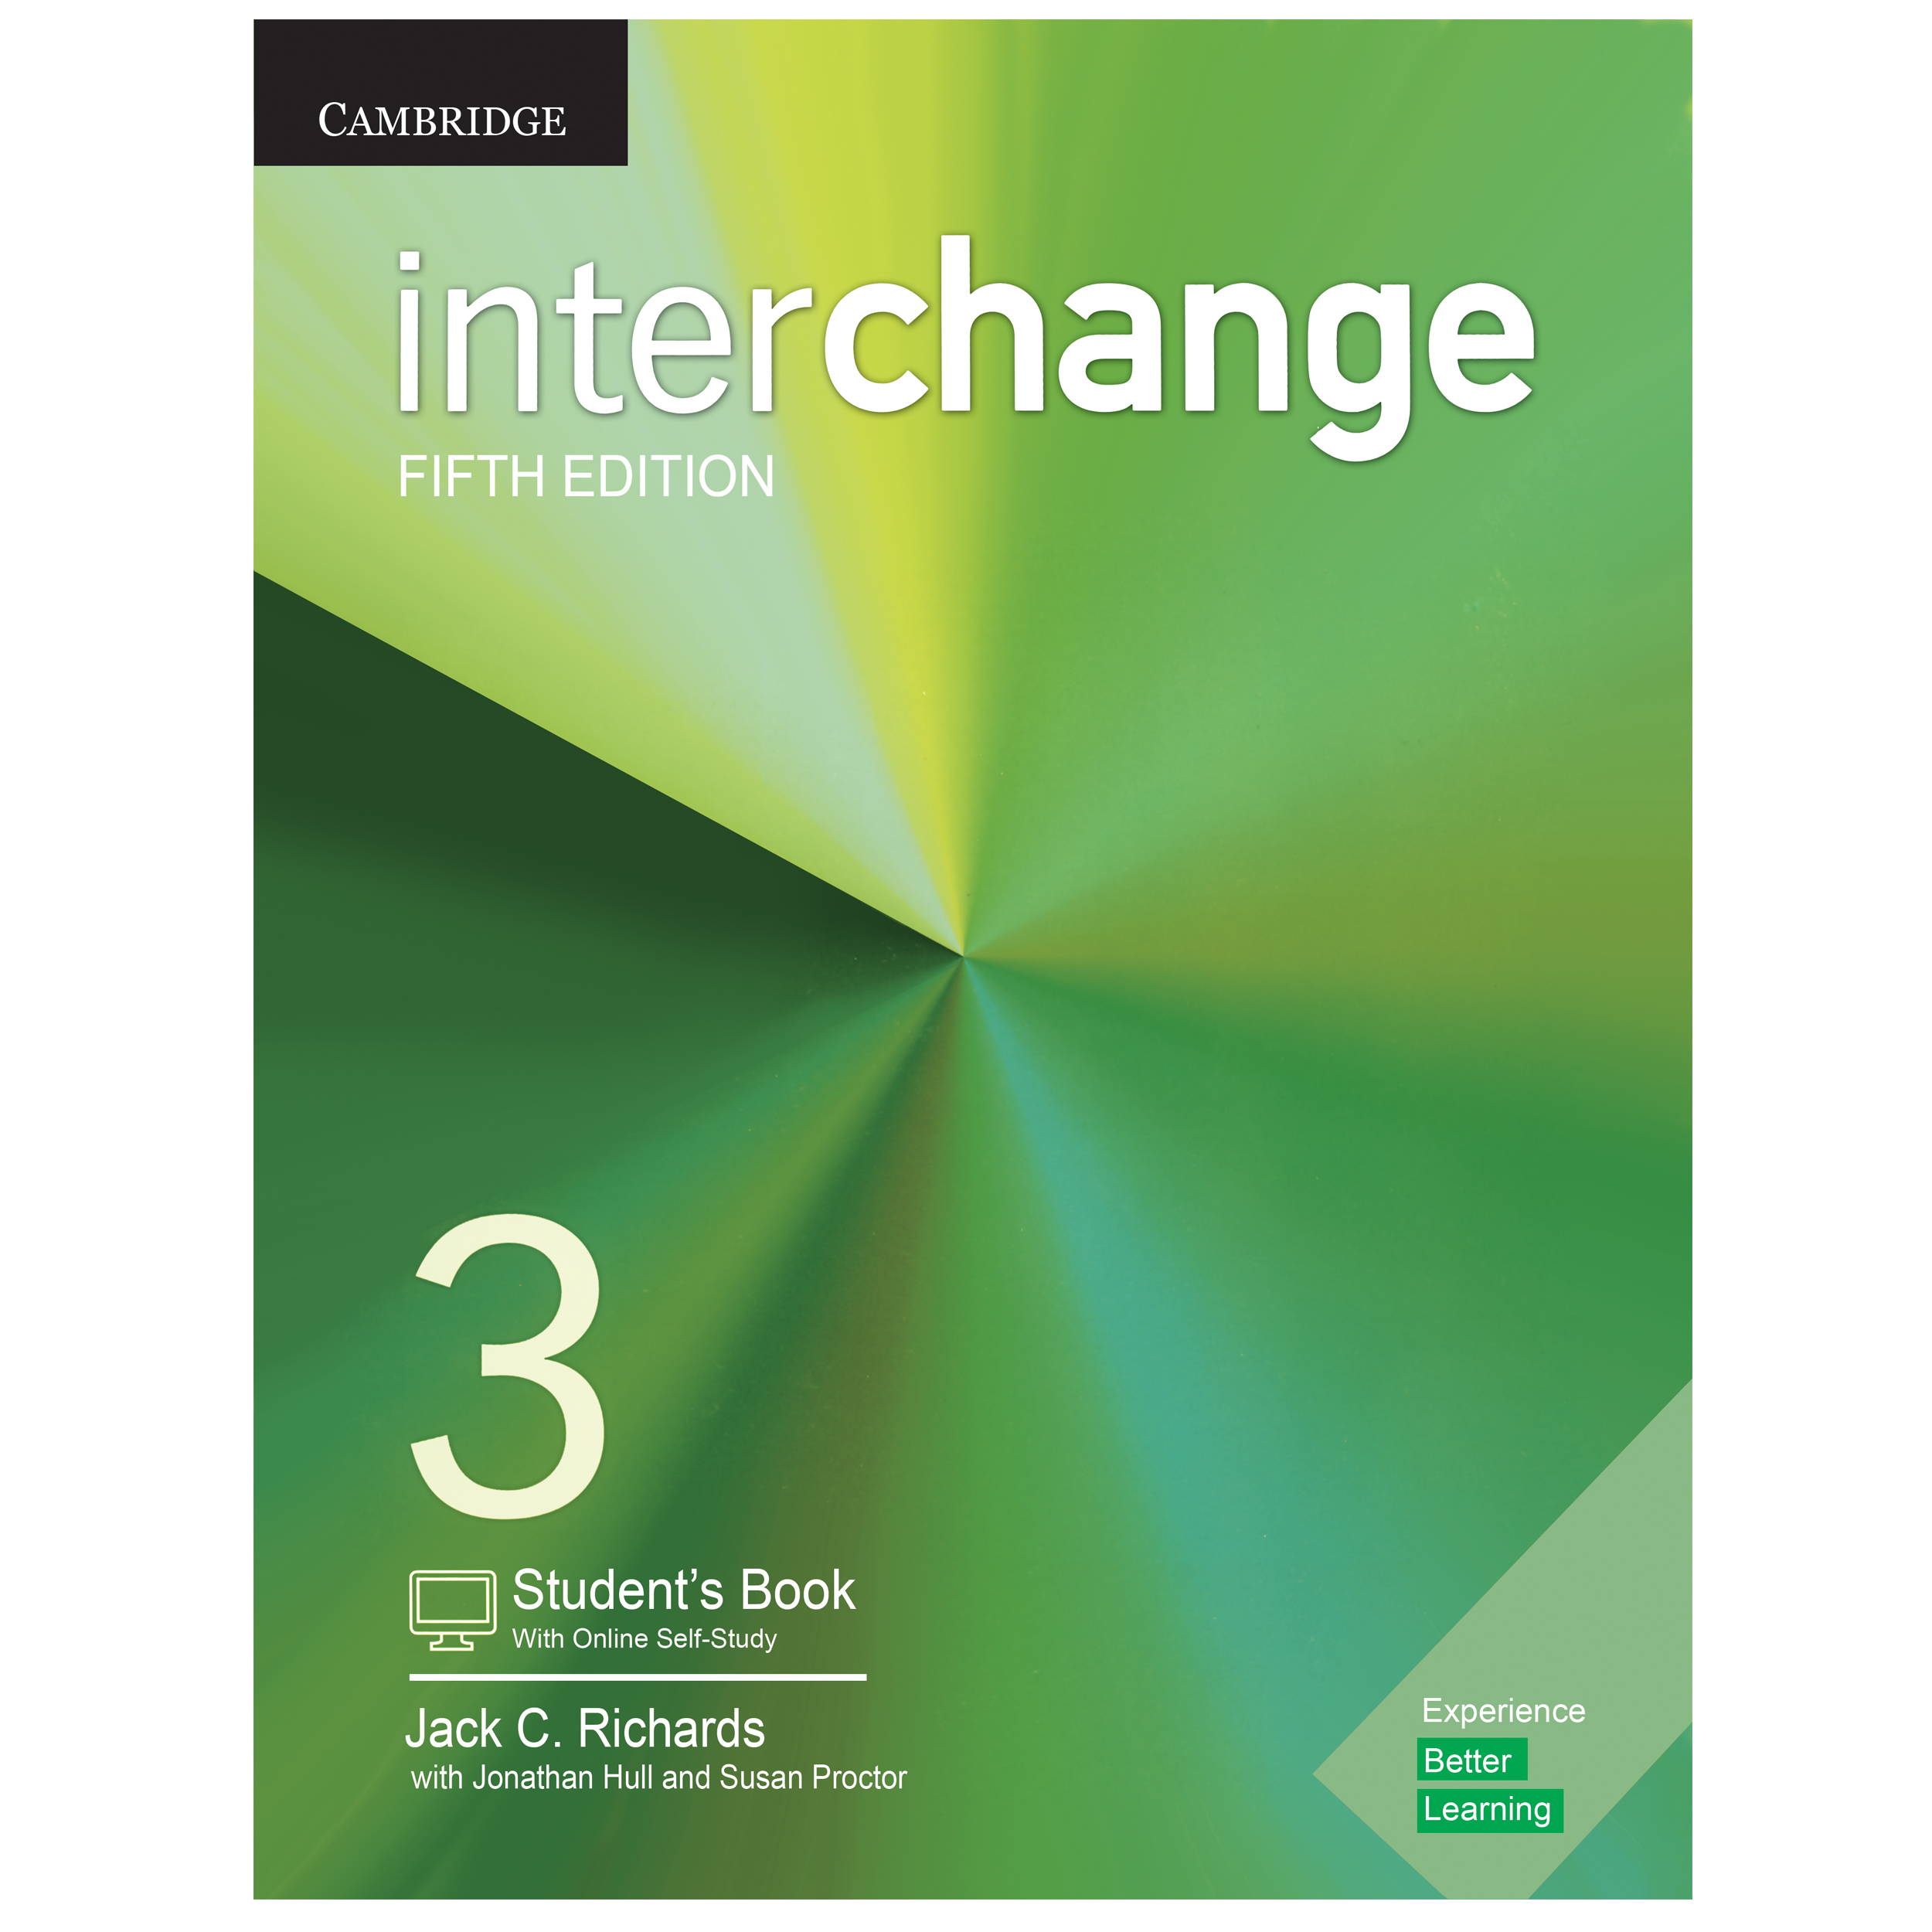 کتاب Interchange 3 Fifth Edition اثر Jack C. Richards انتشارات هدف نوین